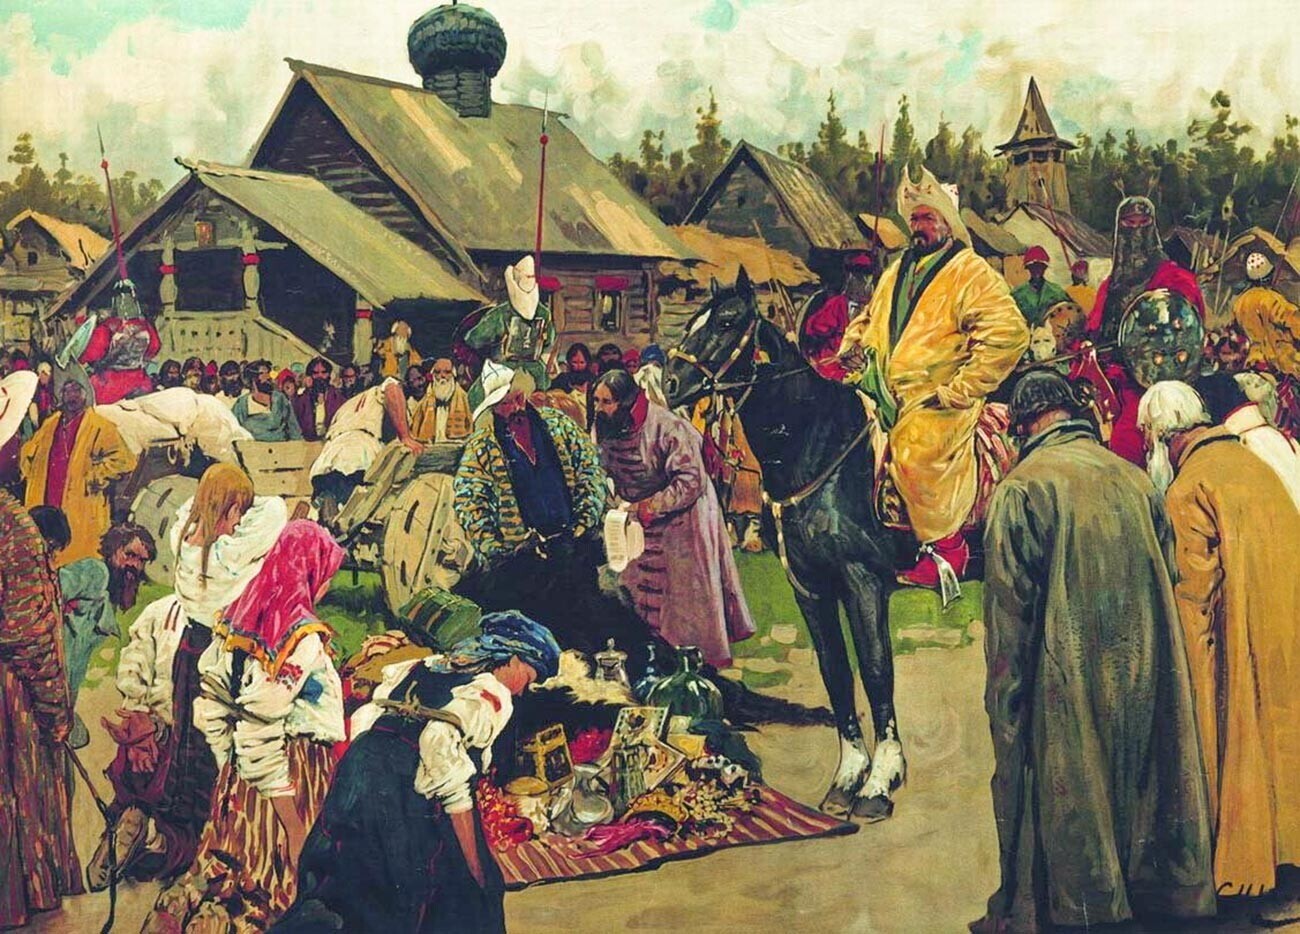 Baskaki (fiscais) tártaros chegando a uma vila russa para receber impostos (Baskaki, de Serguêi Ivanov, 1909)

